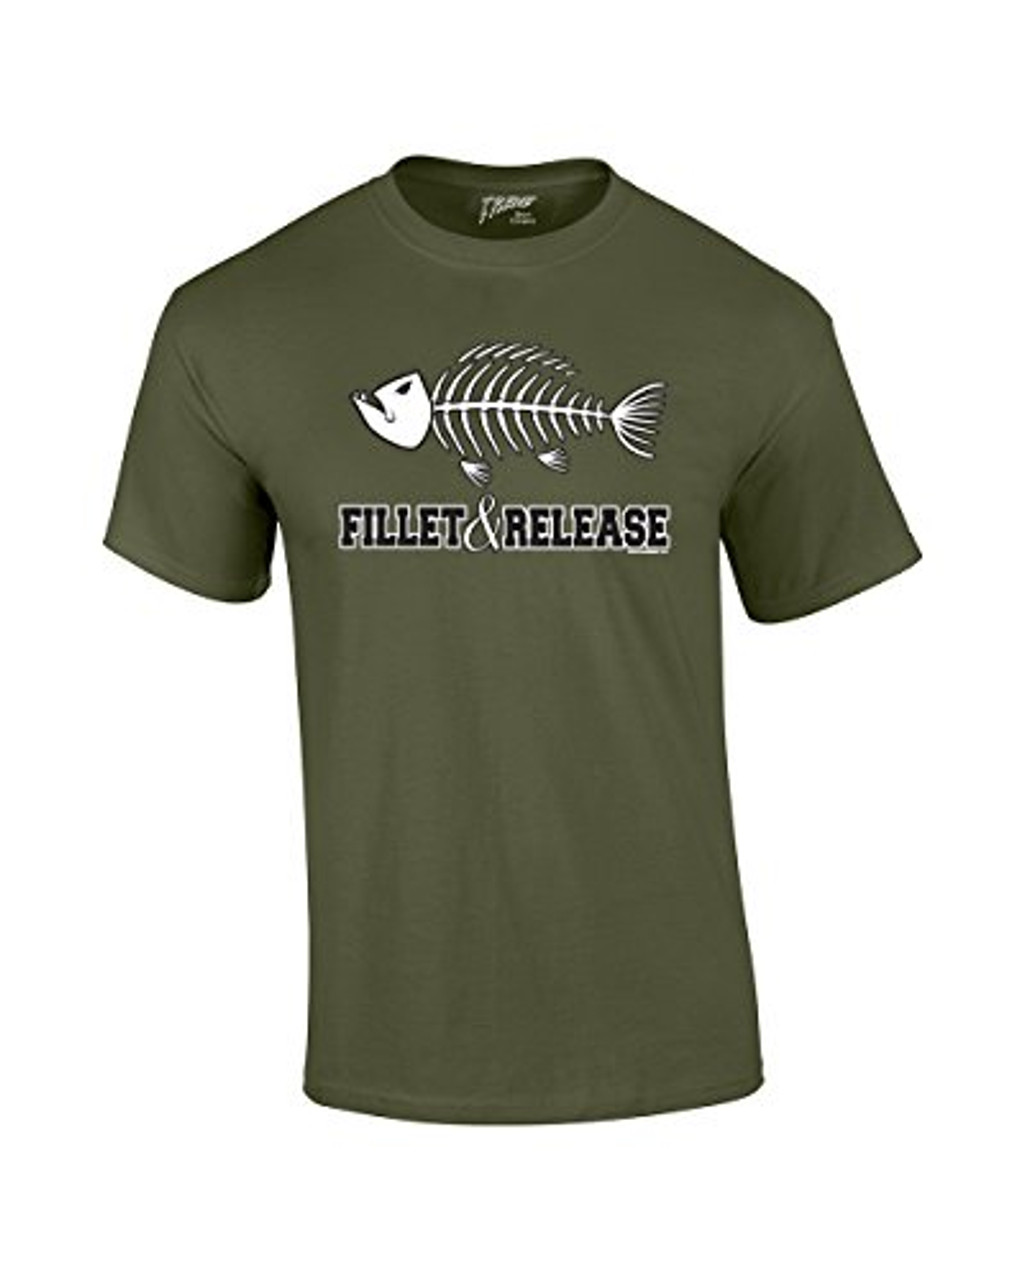 Familyloveshop LLC Fishing T-Shirts Funny Fishing T Shirts for Men